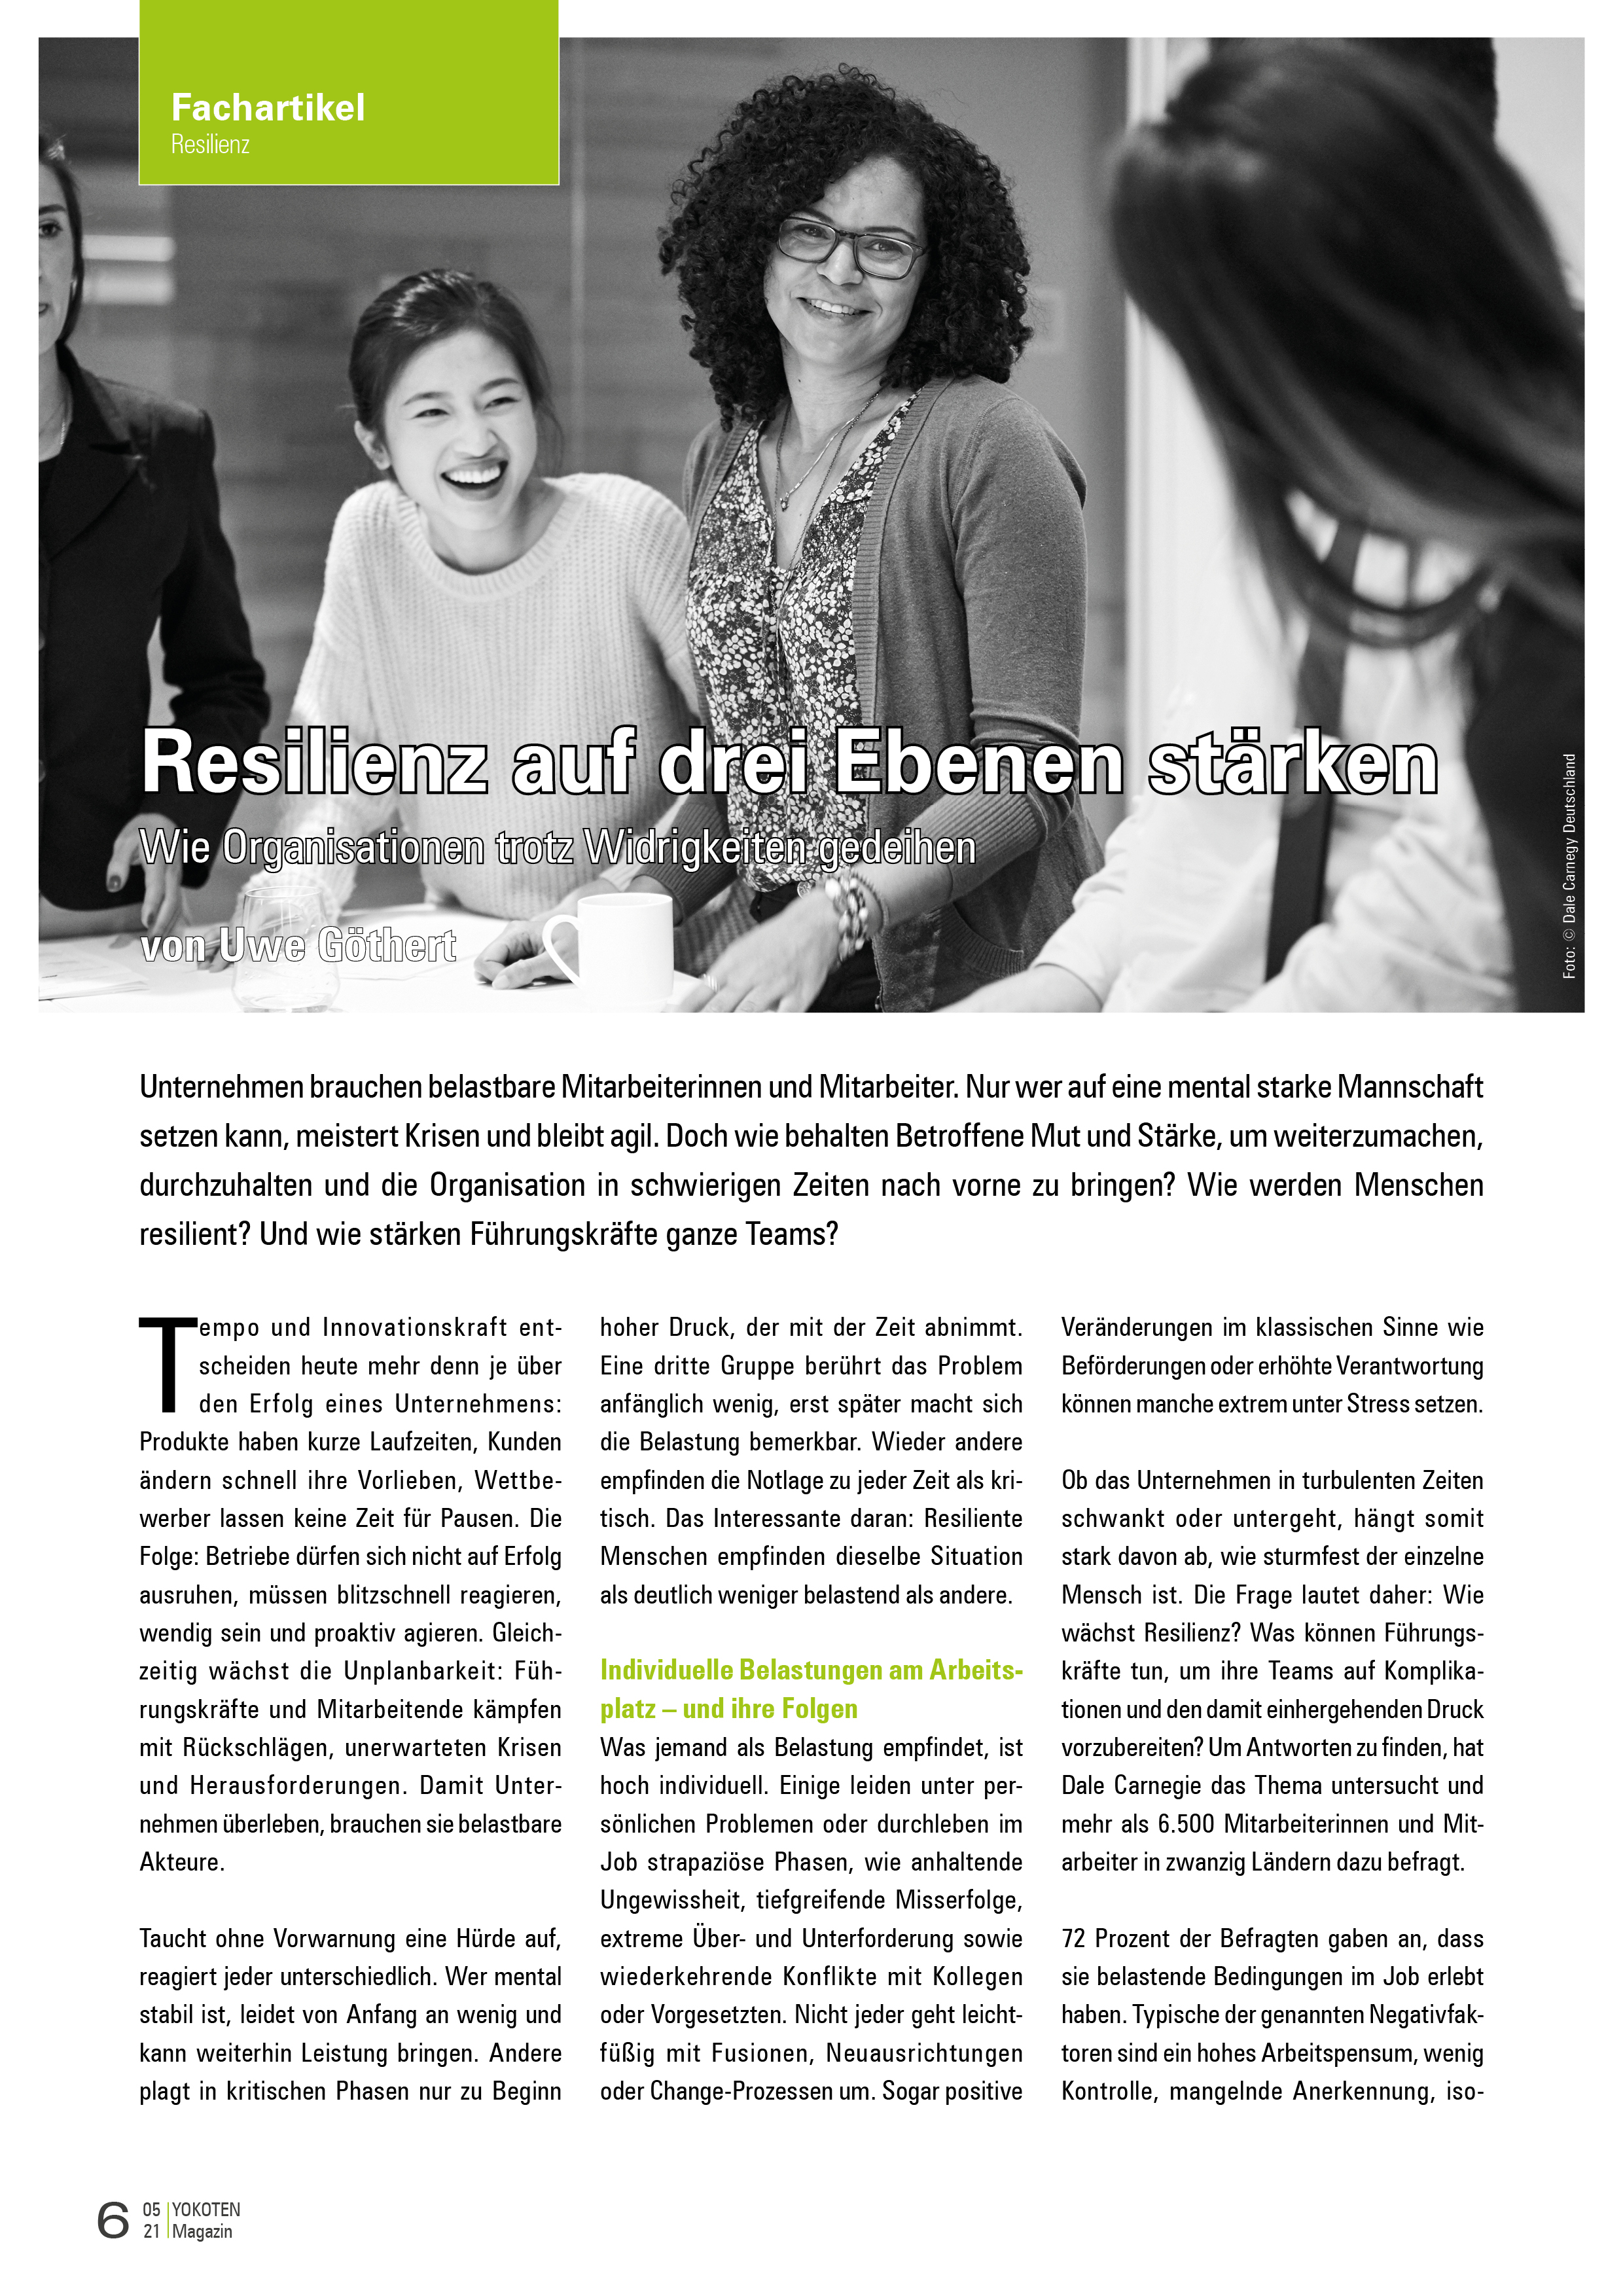 Resilienz auf drei Ebenen stärken - Artikel aus Fachmagazin YOKOTEN 2021-05